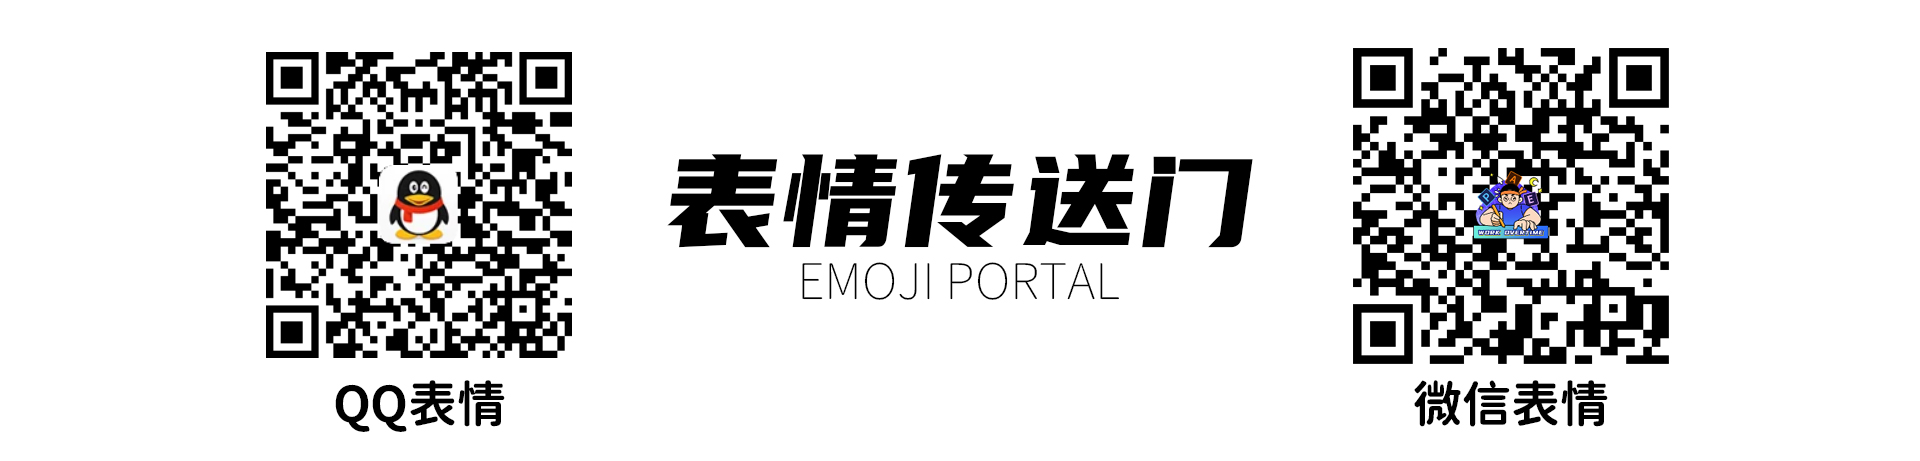 网络表情丨EMO先生的情绪贴纸 动态版正式上线啦！